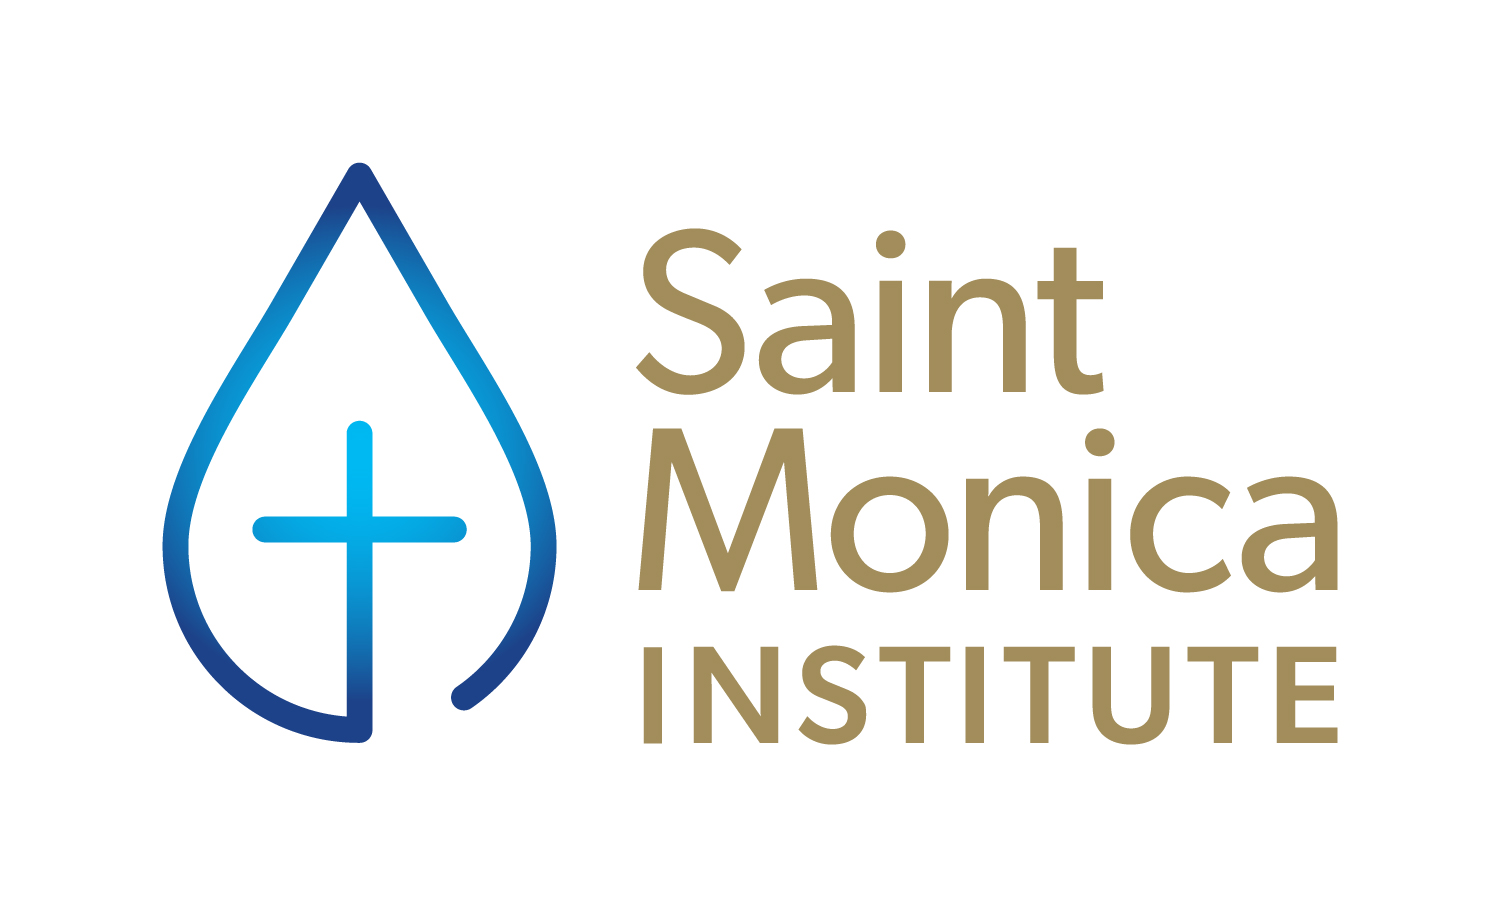 Saint Monica Institute